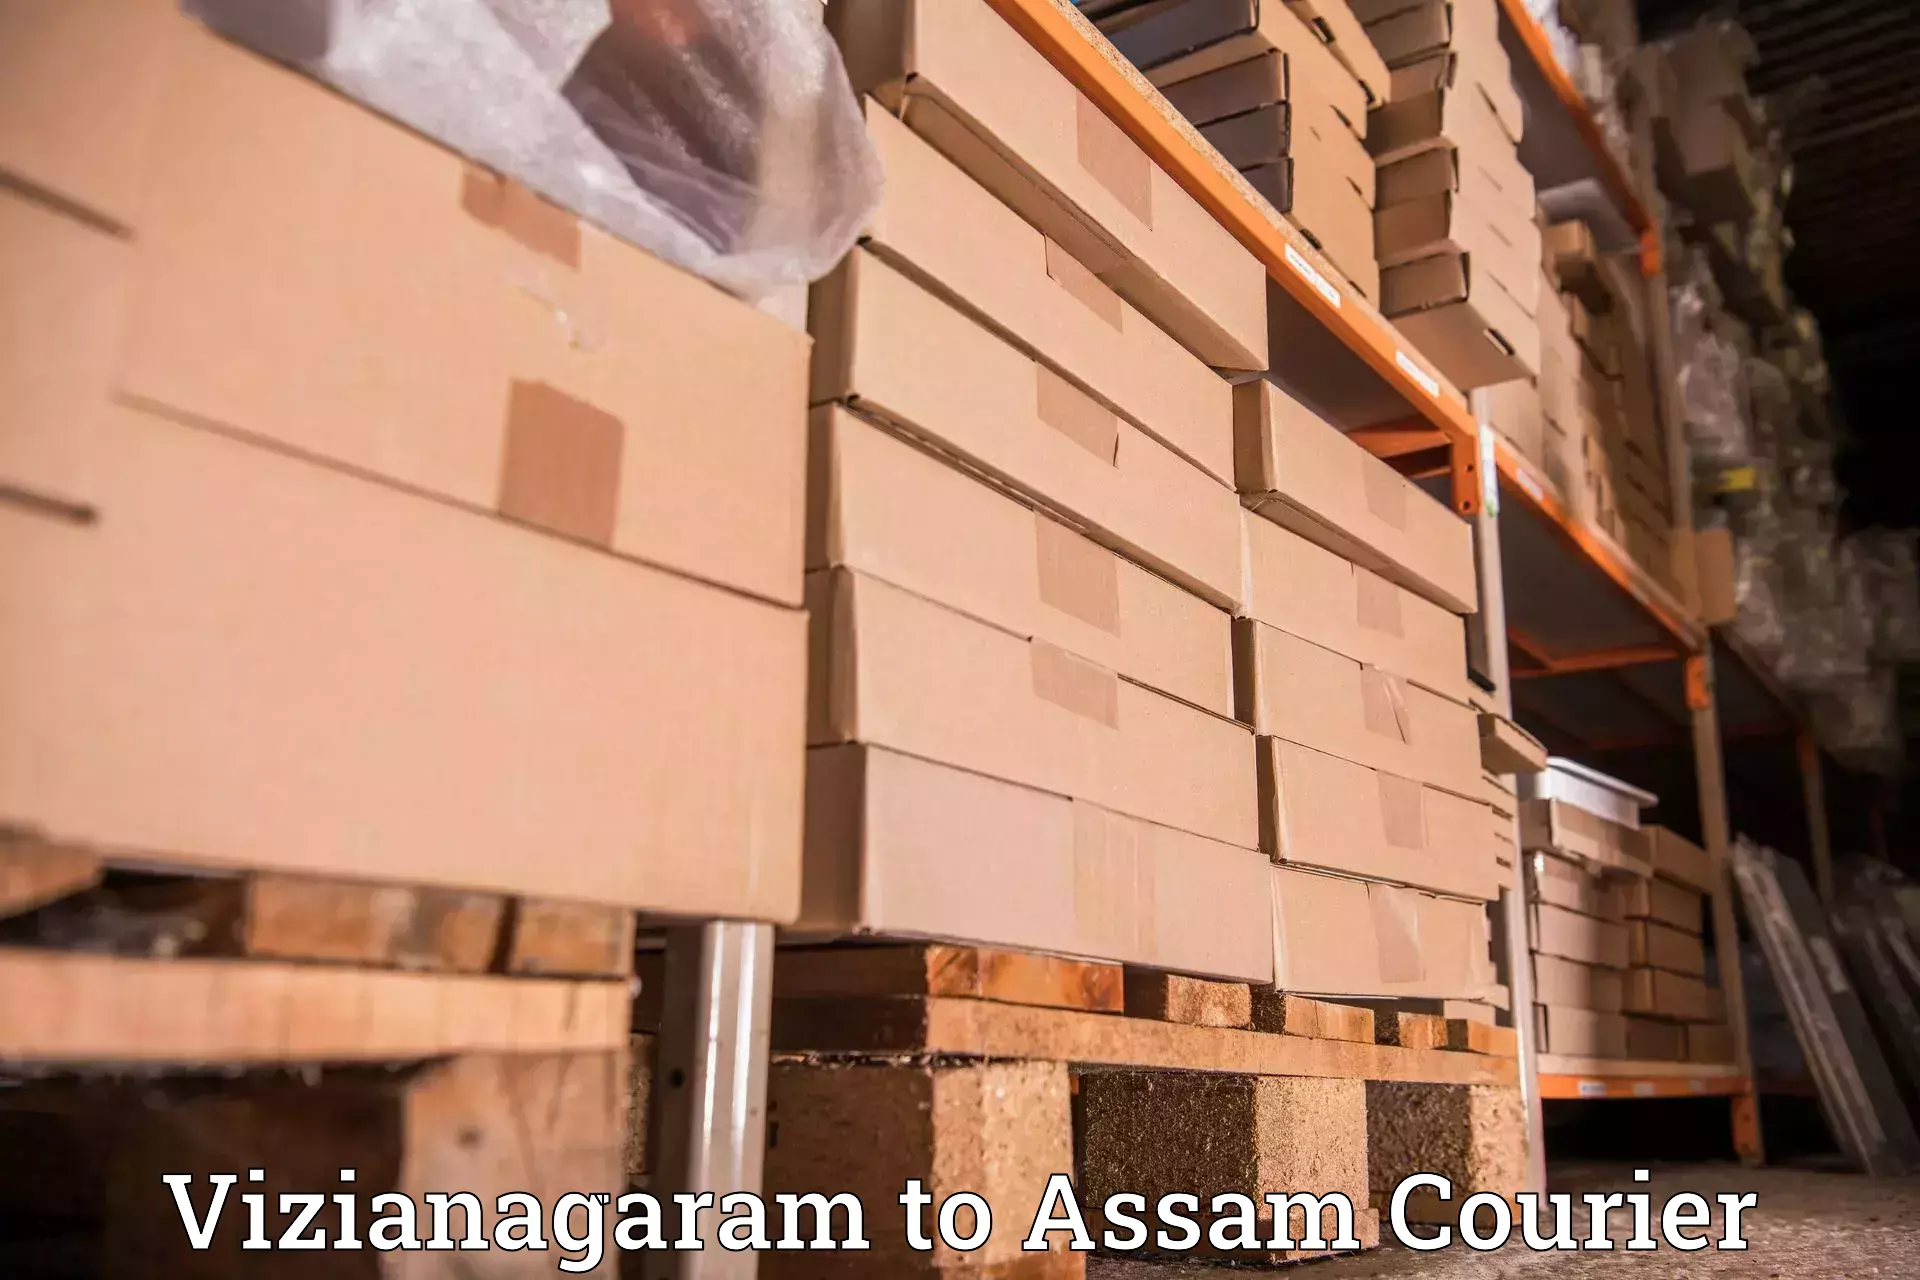 Courier dispatch services Vizianagaram to Nagaon